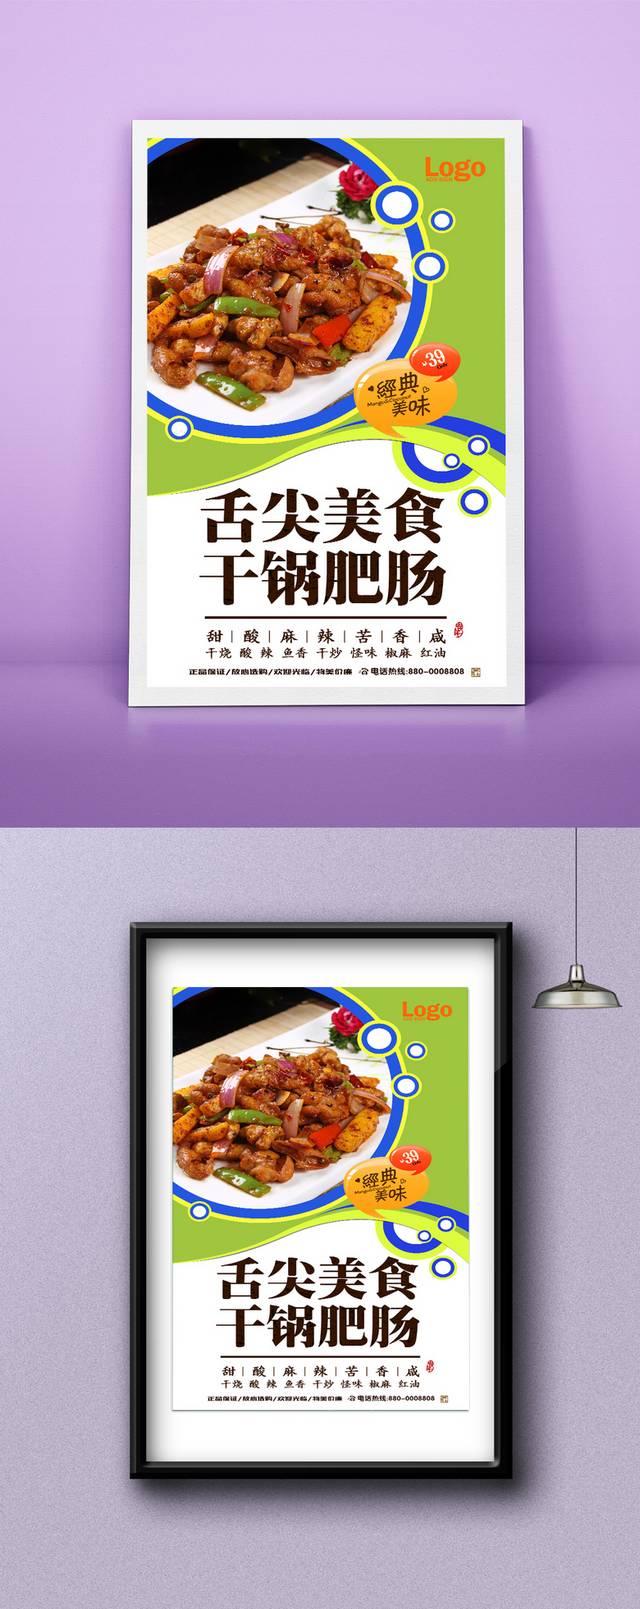 高档干锅肥肠宣传海报设计